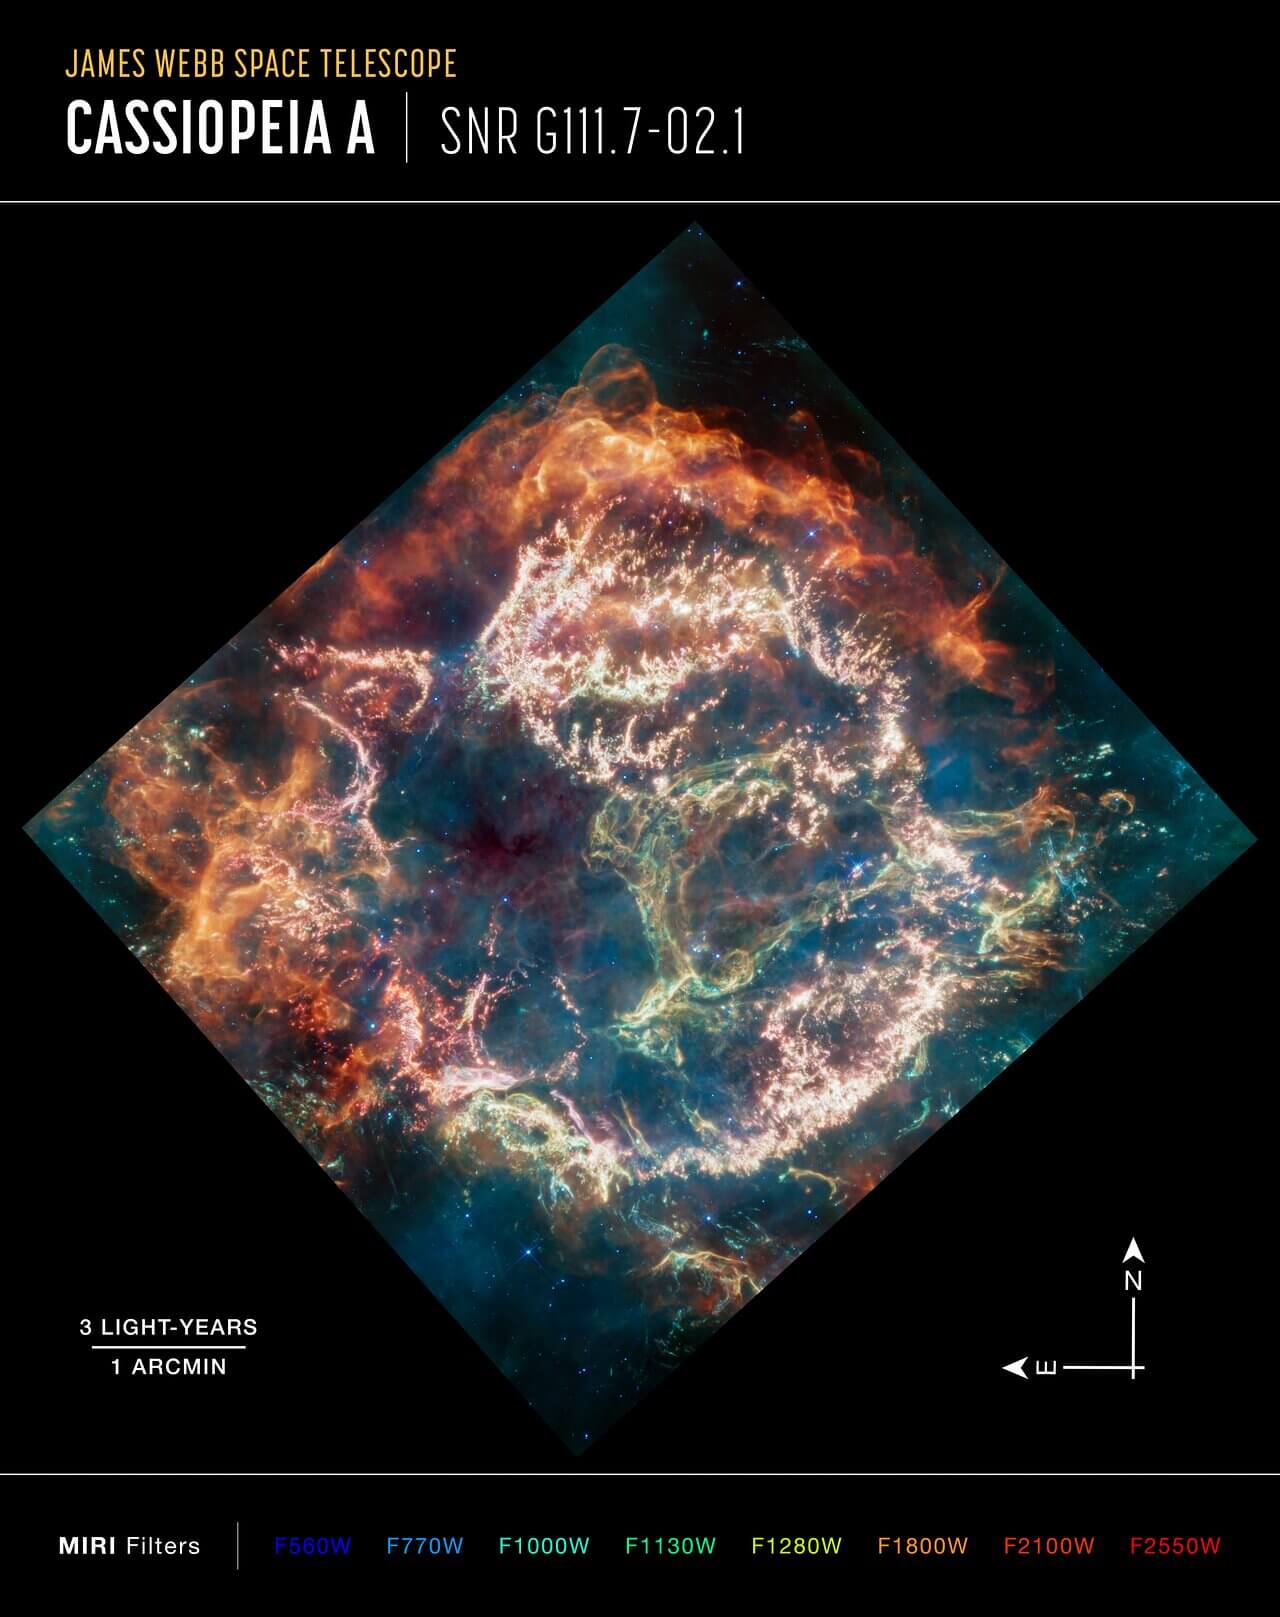 يعد انفجار النجم حدثًا دراميًا، لكن الحطام الذي يتركه النجم خلفه يمكن أن يكون أكثر دراماتيكية. توفر صورة جديدة للأشعة تحت الحمراء المتوسطة من تلسكوب جيمس ويب الفضائي مثالاً مذهلاً. يُظهر بقايا المستعر الأعظم ذو الكرسي A (Cas A)، الذي نشأ عن انفجار نجمي قبل 340 عامًا. تُظهر الصورة ألوانًا زاهية وهياكل معقدة. يعد Cas A أصغر بقايا معروفة لنجم منفجر ضخم في مجرتنا، مما يوفر لعلماء الفلك فرصة لفهم عملية موت النجم. مصدر الصورة: NASA، ESA، CSA، D. Milisavljevic (جامعة بوردو)، T. Temim (جامعة برينستون)، I. De Looze (UGent)، J. DePasquale (STScI)